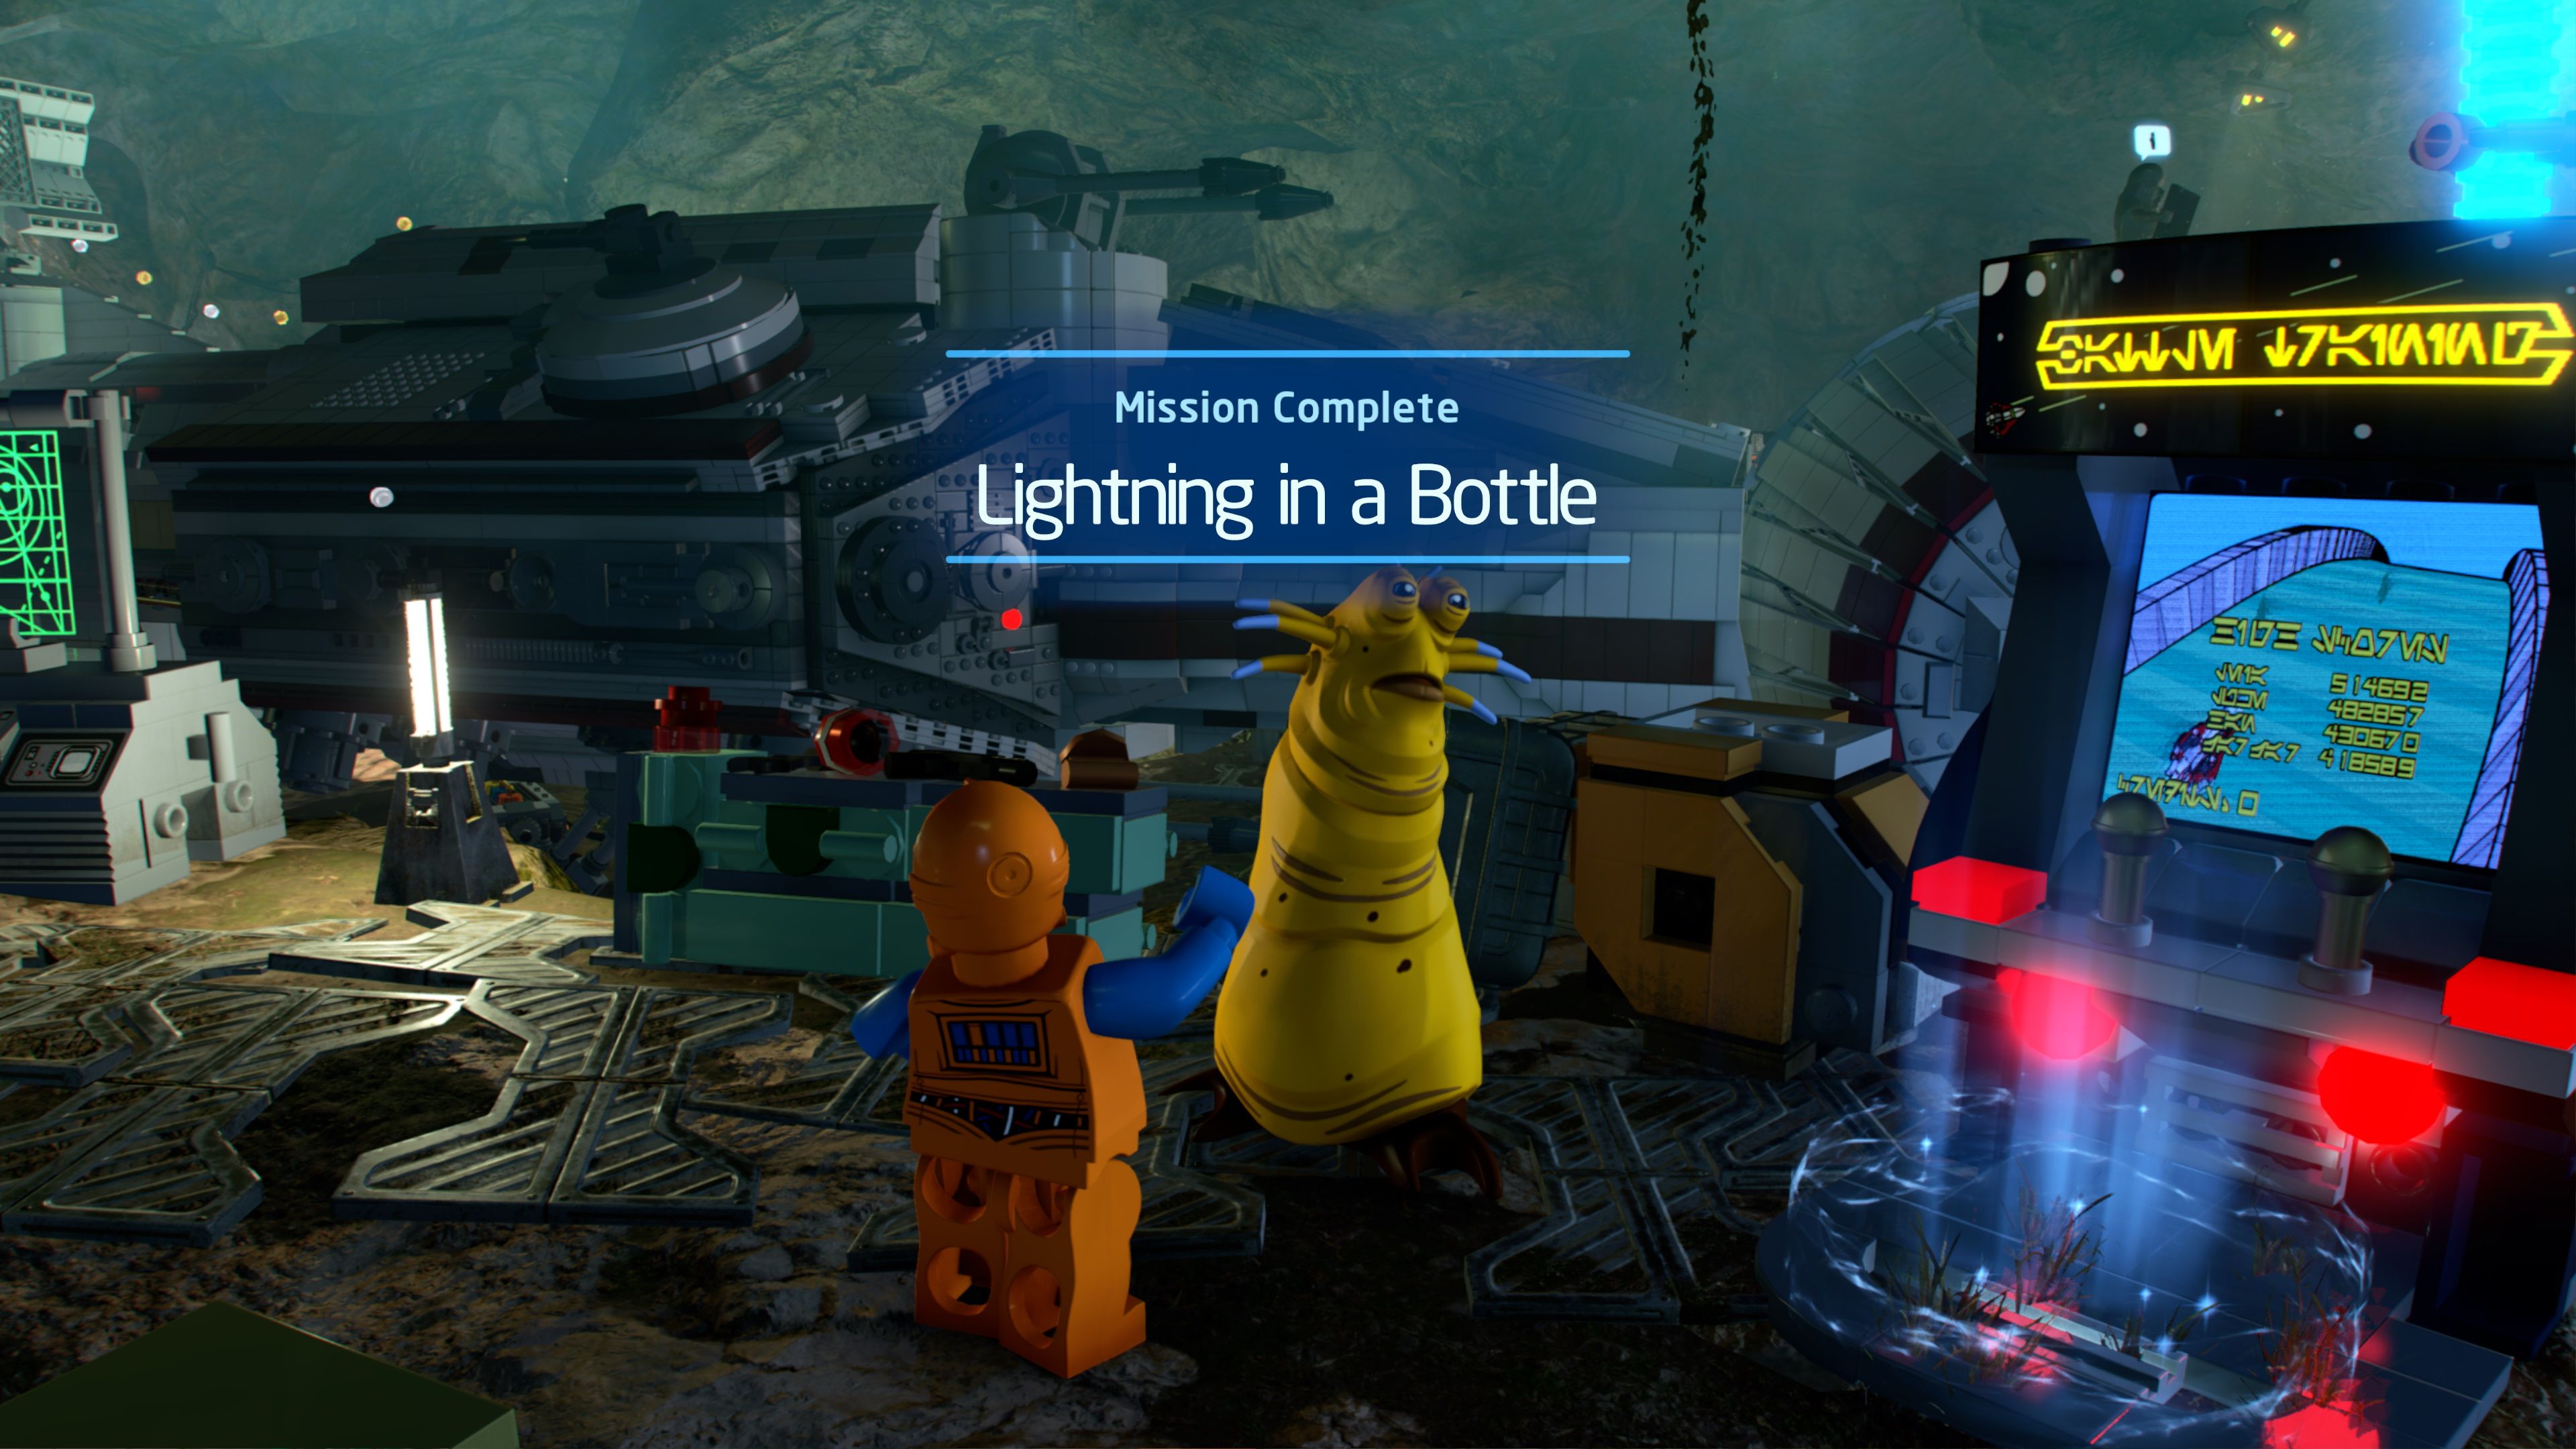 Klaude Quest Giver For Lightning In A Bottle